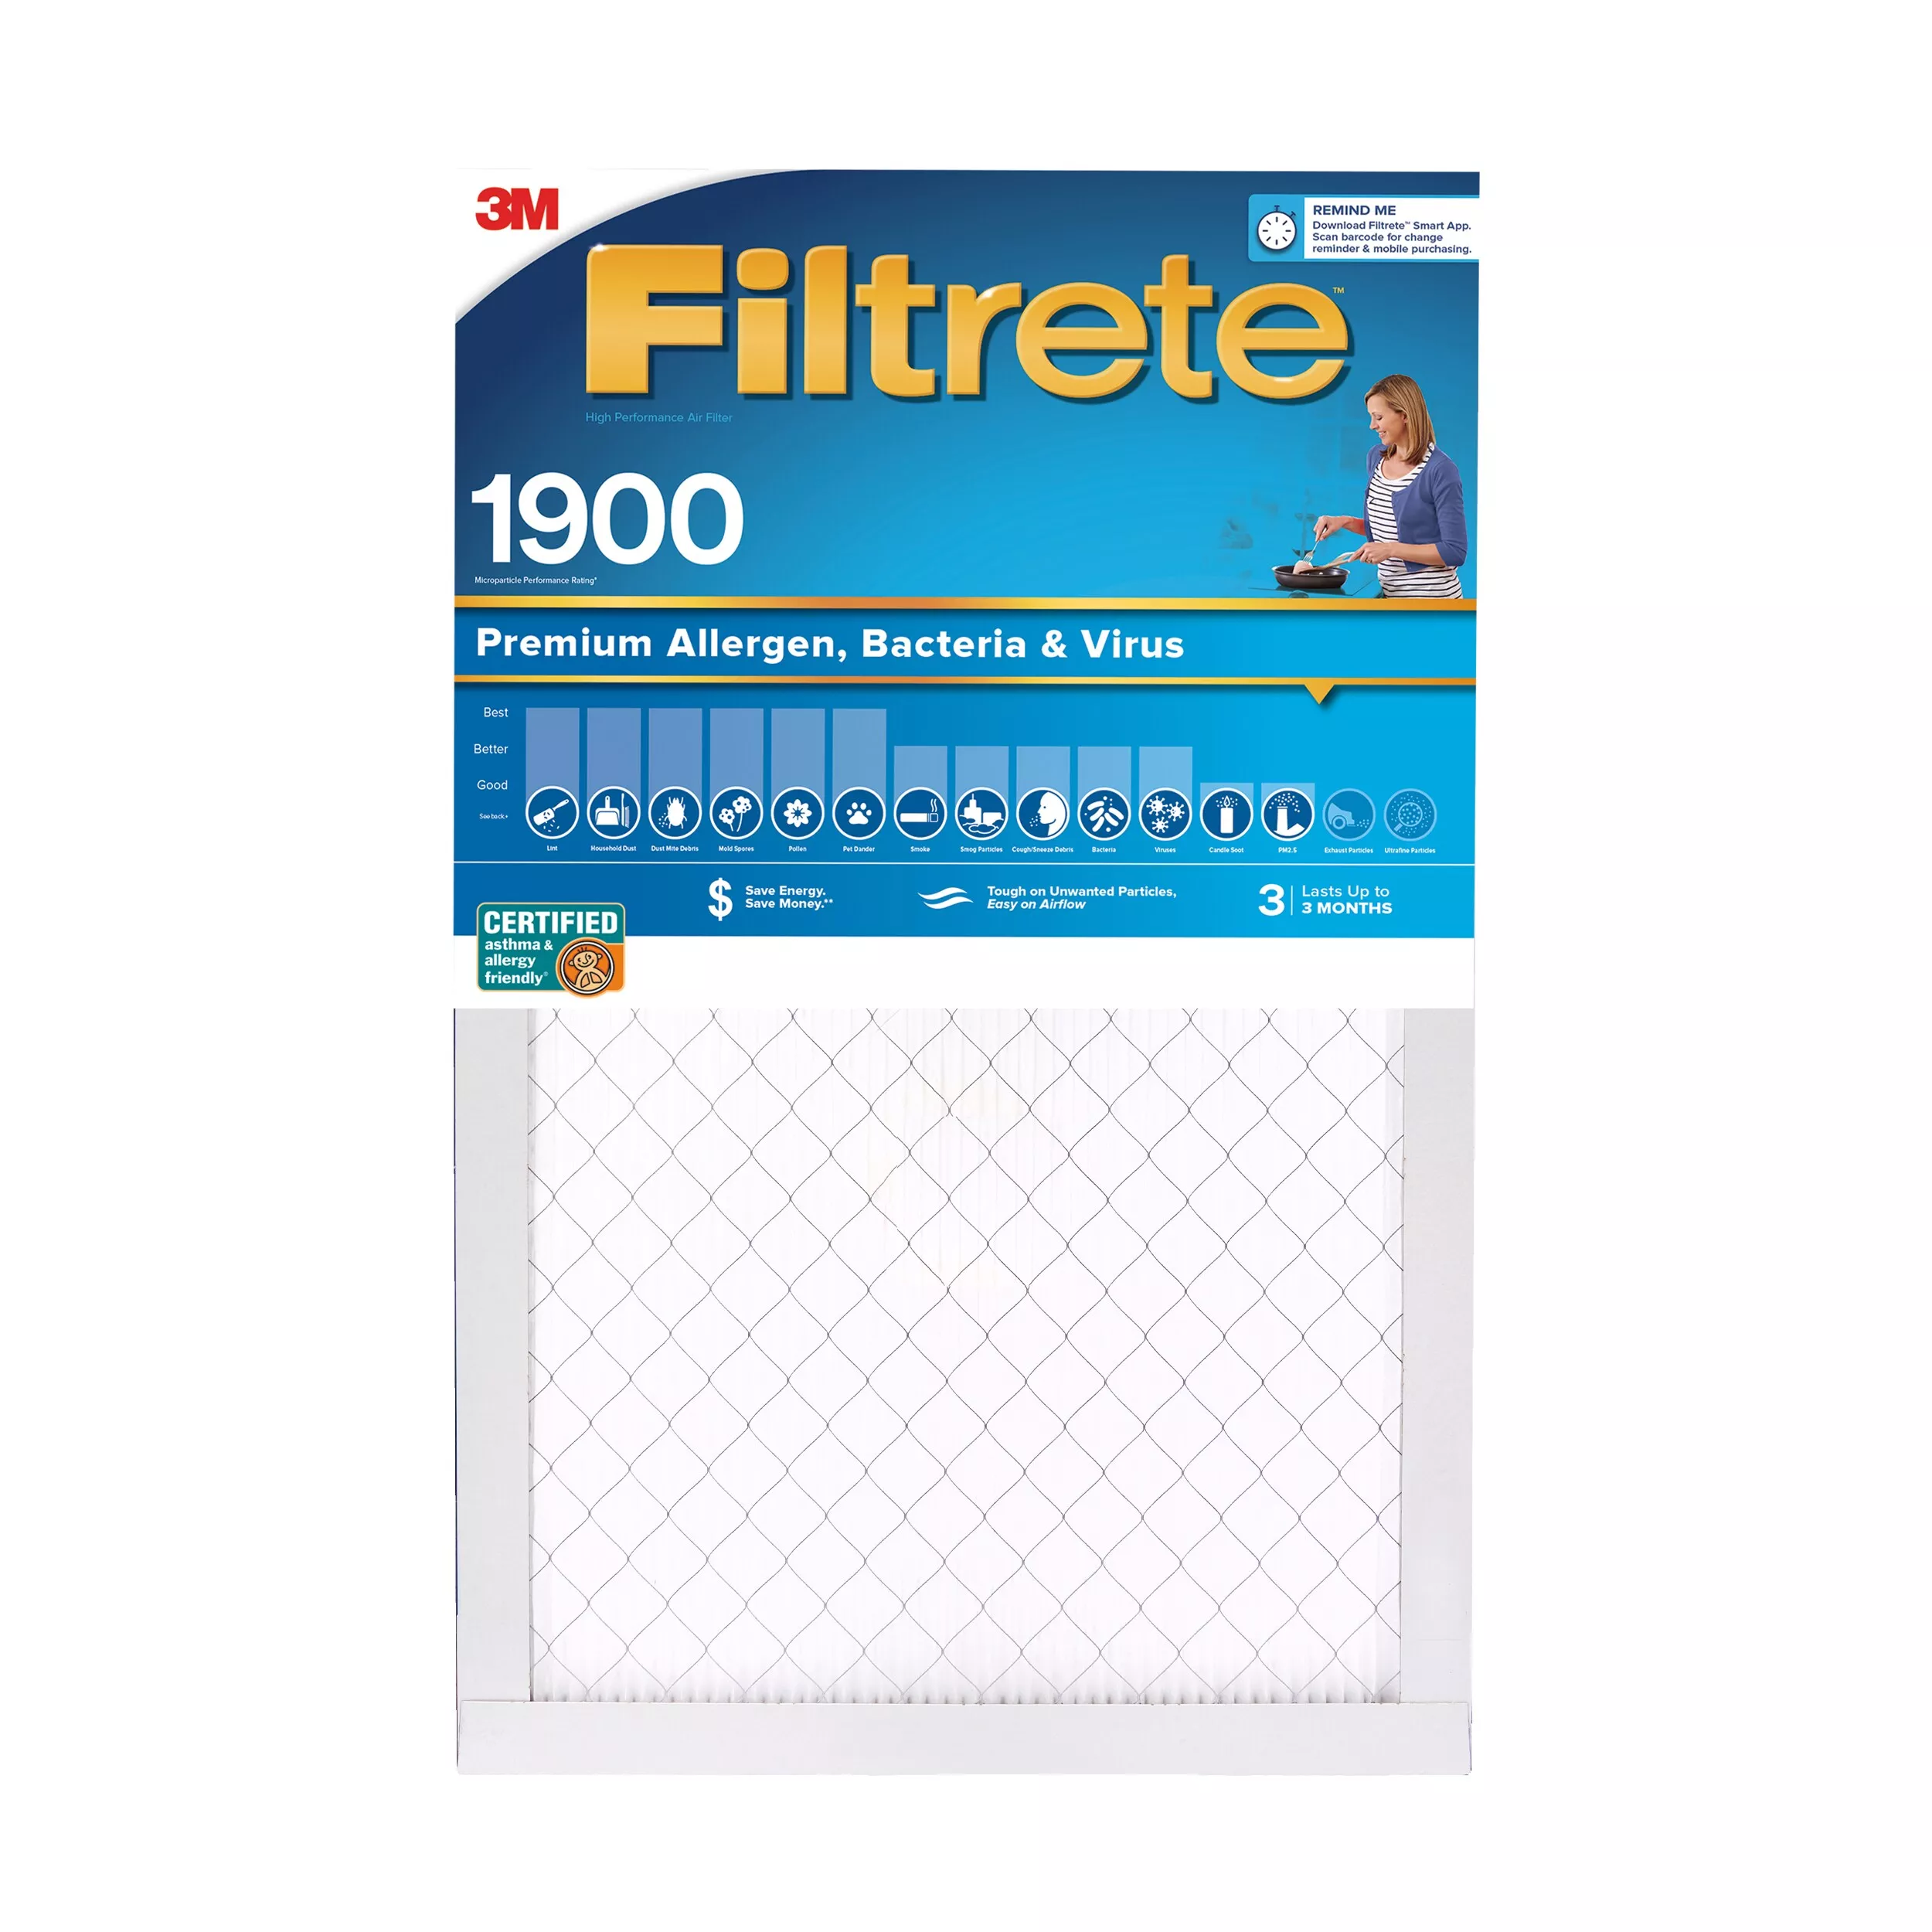 Filtrete™ High Performance Air Filter 1900 MPR UA03-4, 20 in x 25 in x 1 in (50.8 cm x 63.5 cm x 2.5 cm)